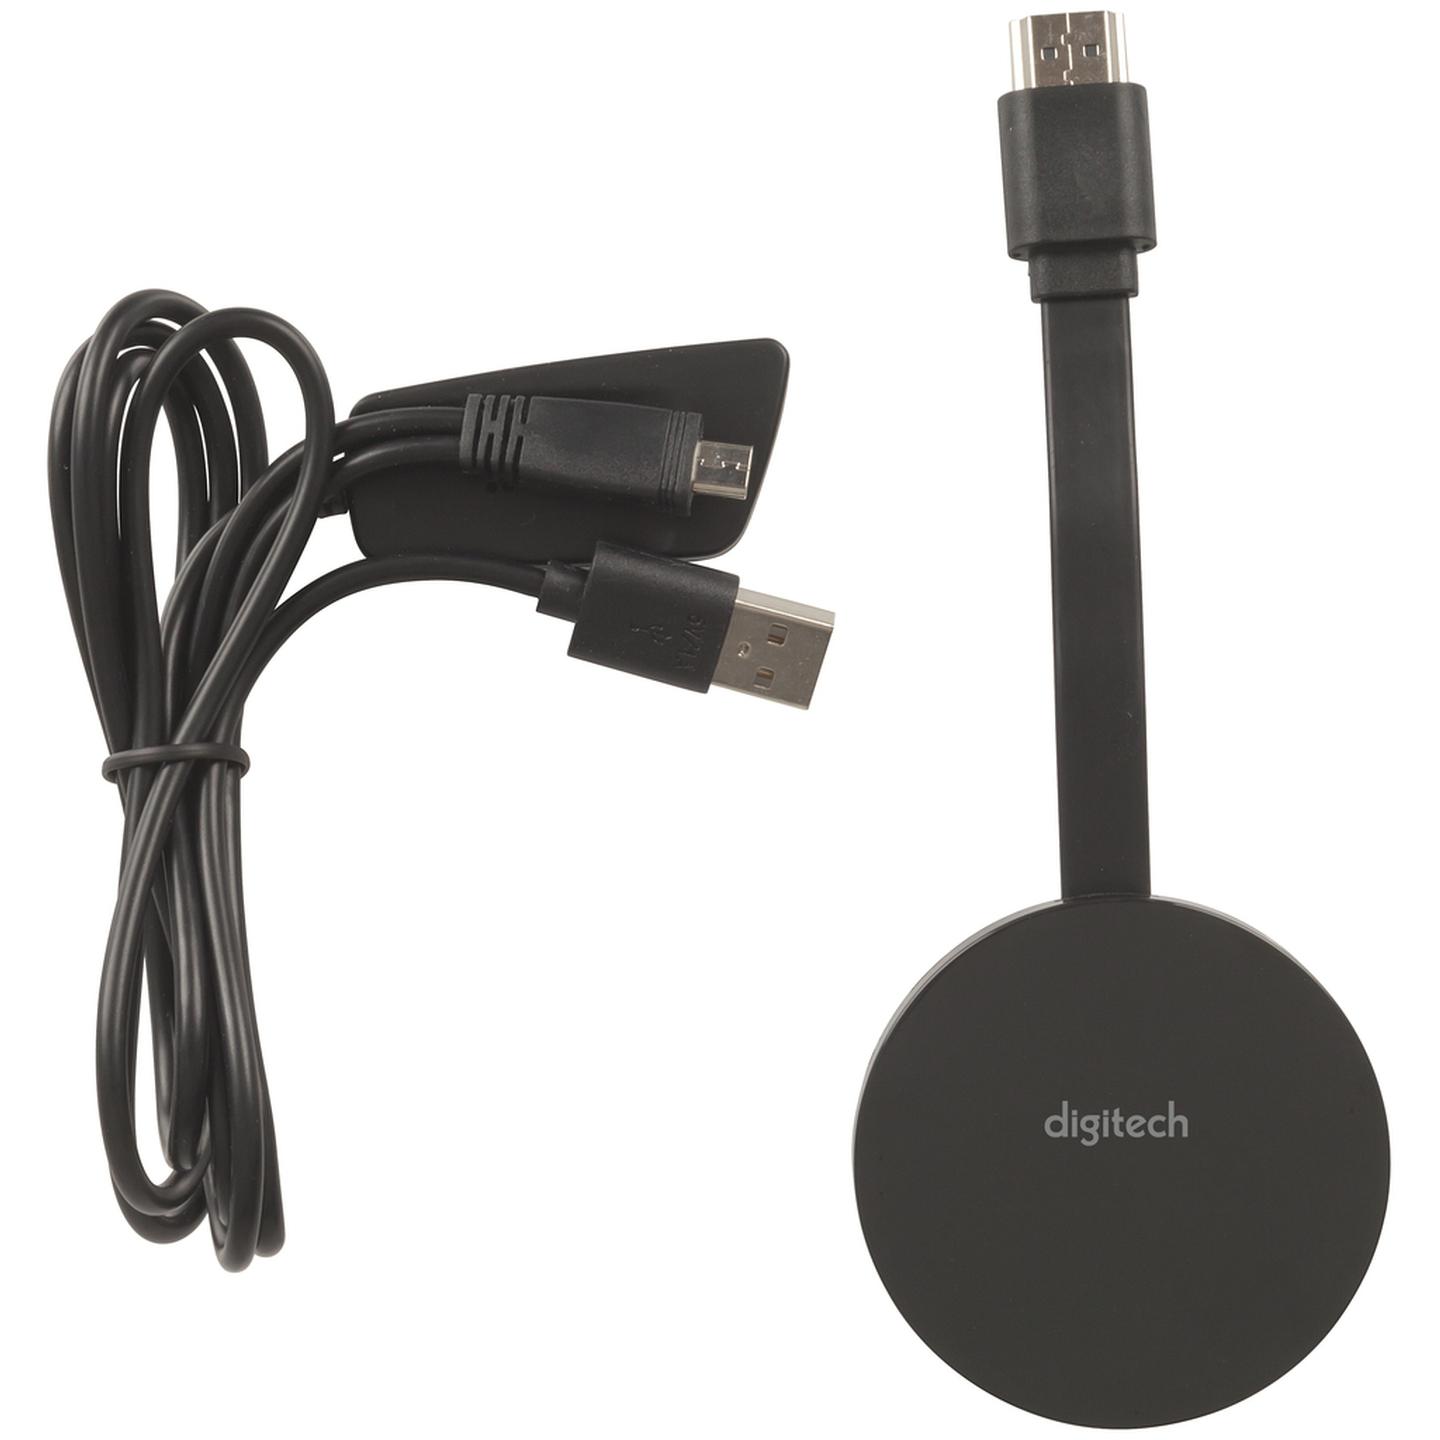 Digitech Miracast Dongle HDMI 4K Wi-Fi